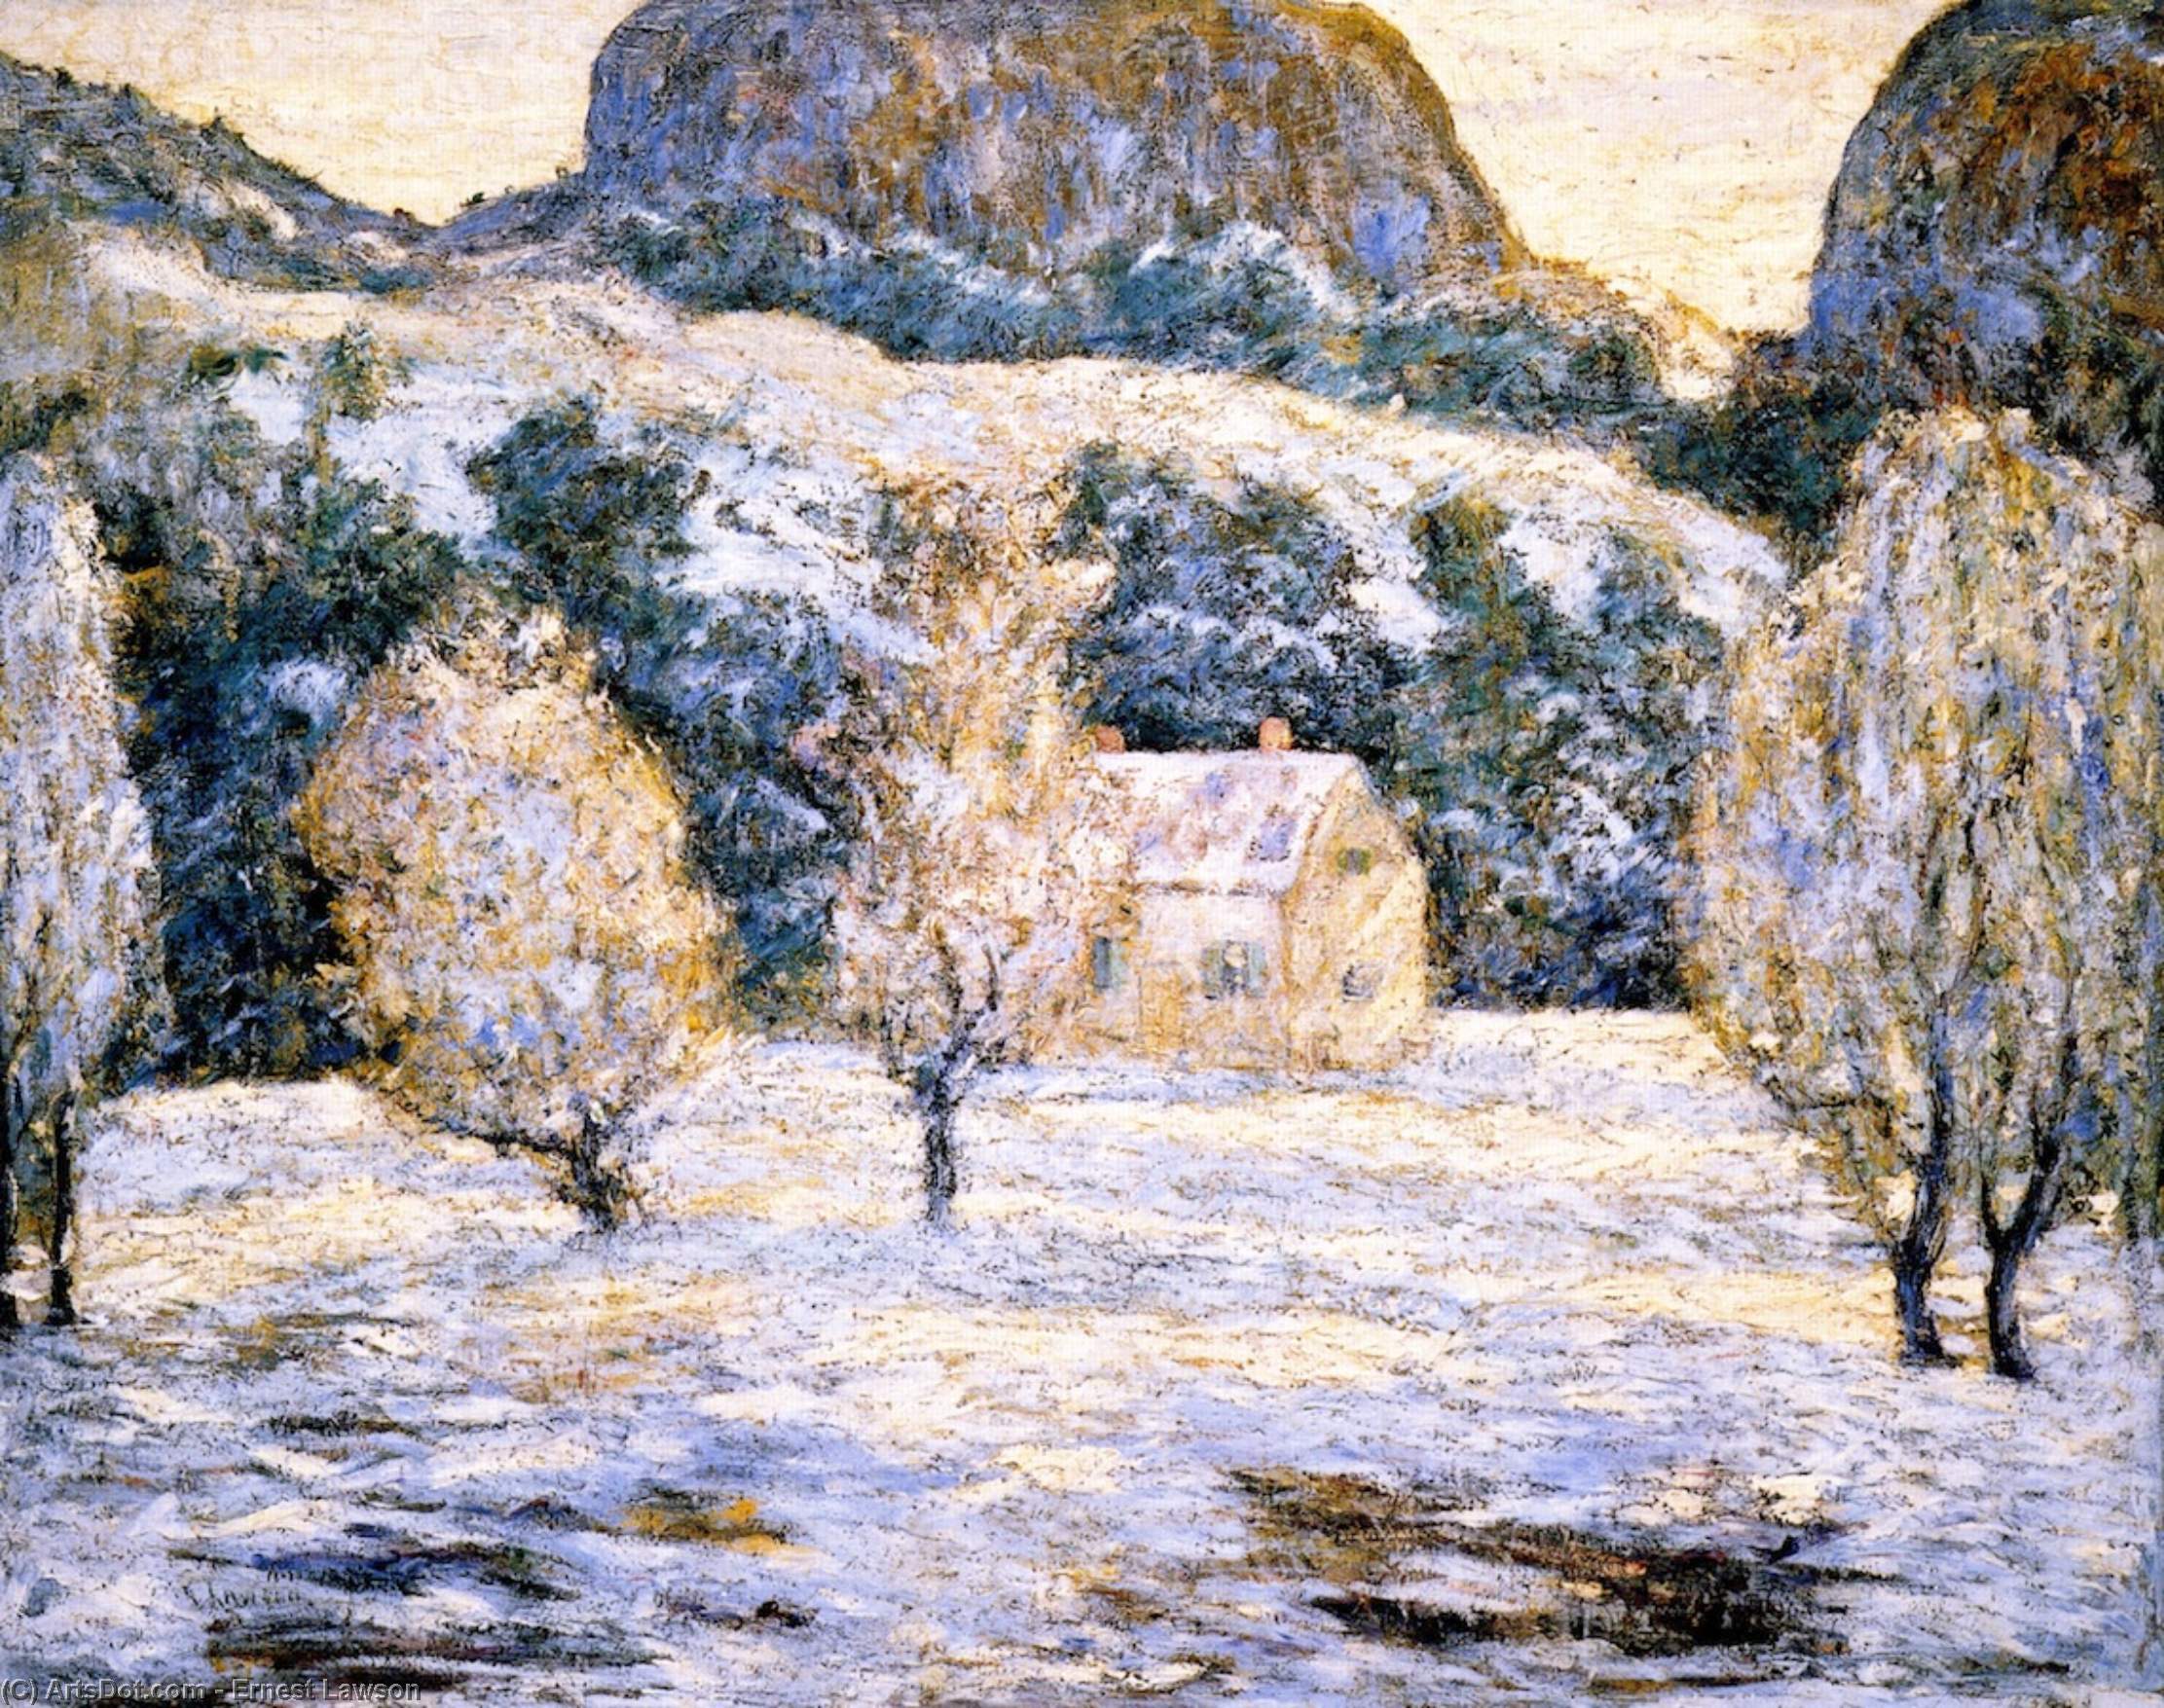 Compra Riproduzioni D'arte Del Museo Paesaggio invernale (noto anche come alberi in nBlossom), 1920 di Ernest Lawson (1873-1939, Canada) | ArtsDot.com